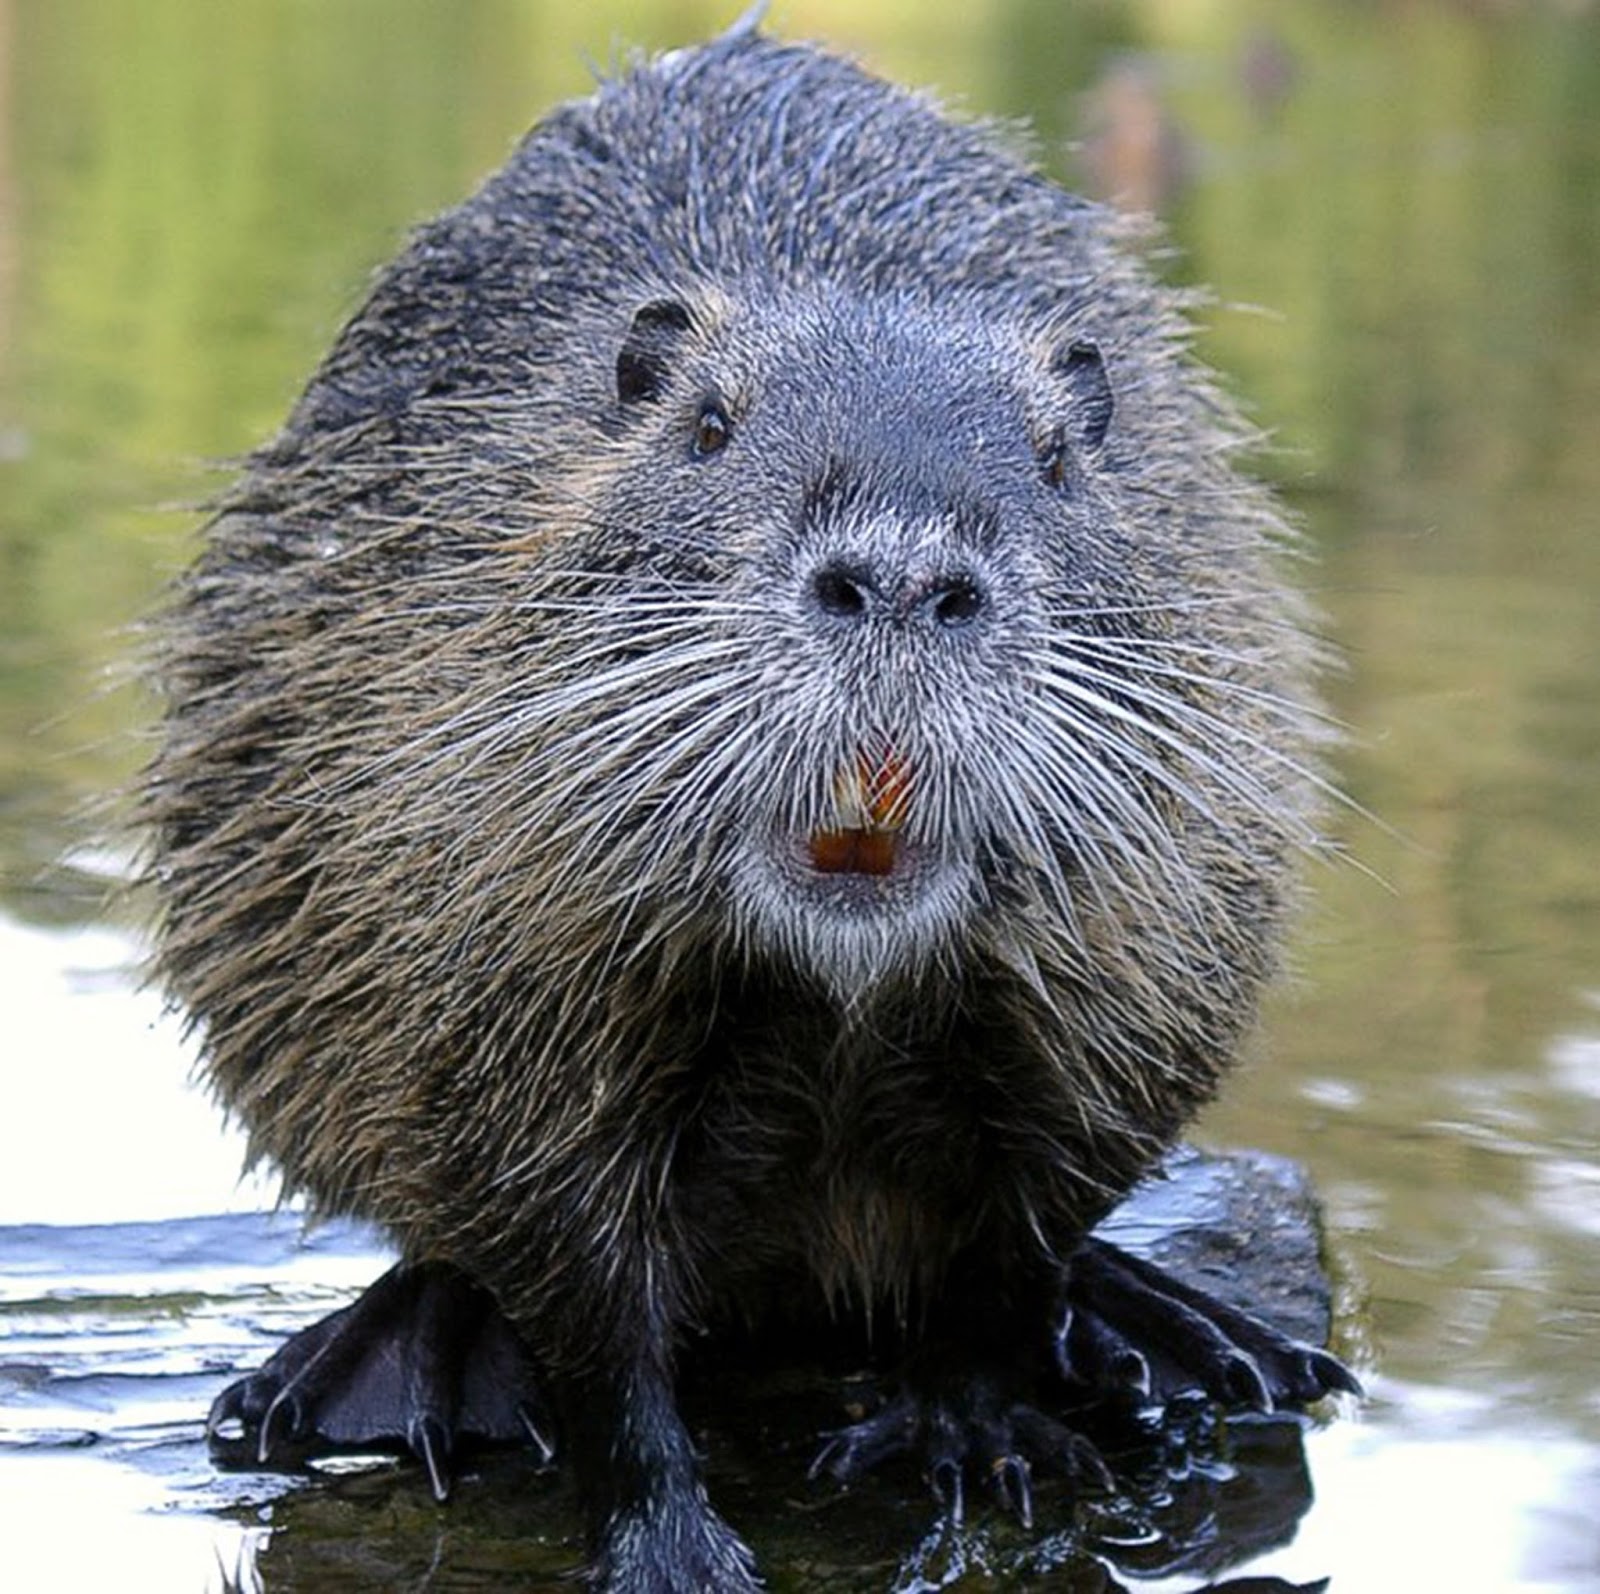 Imagehub: beaver animal images HD Free Download